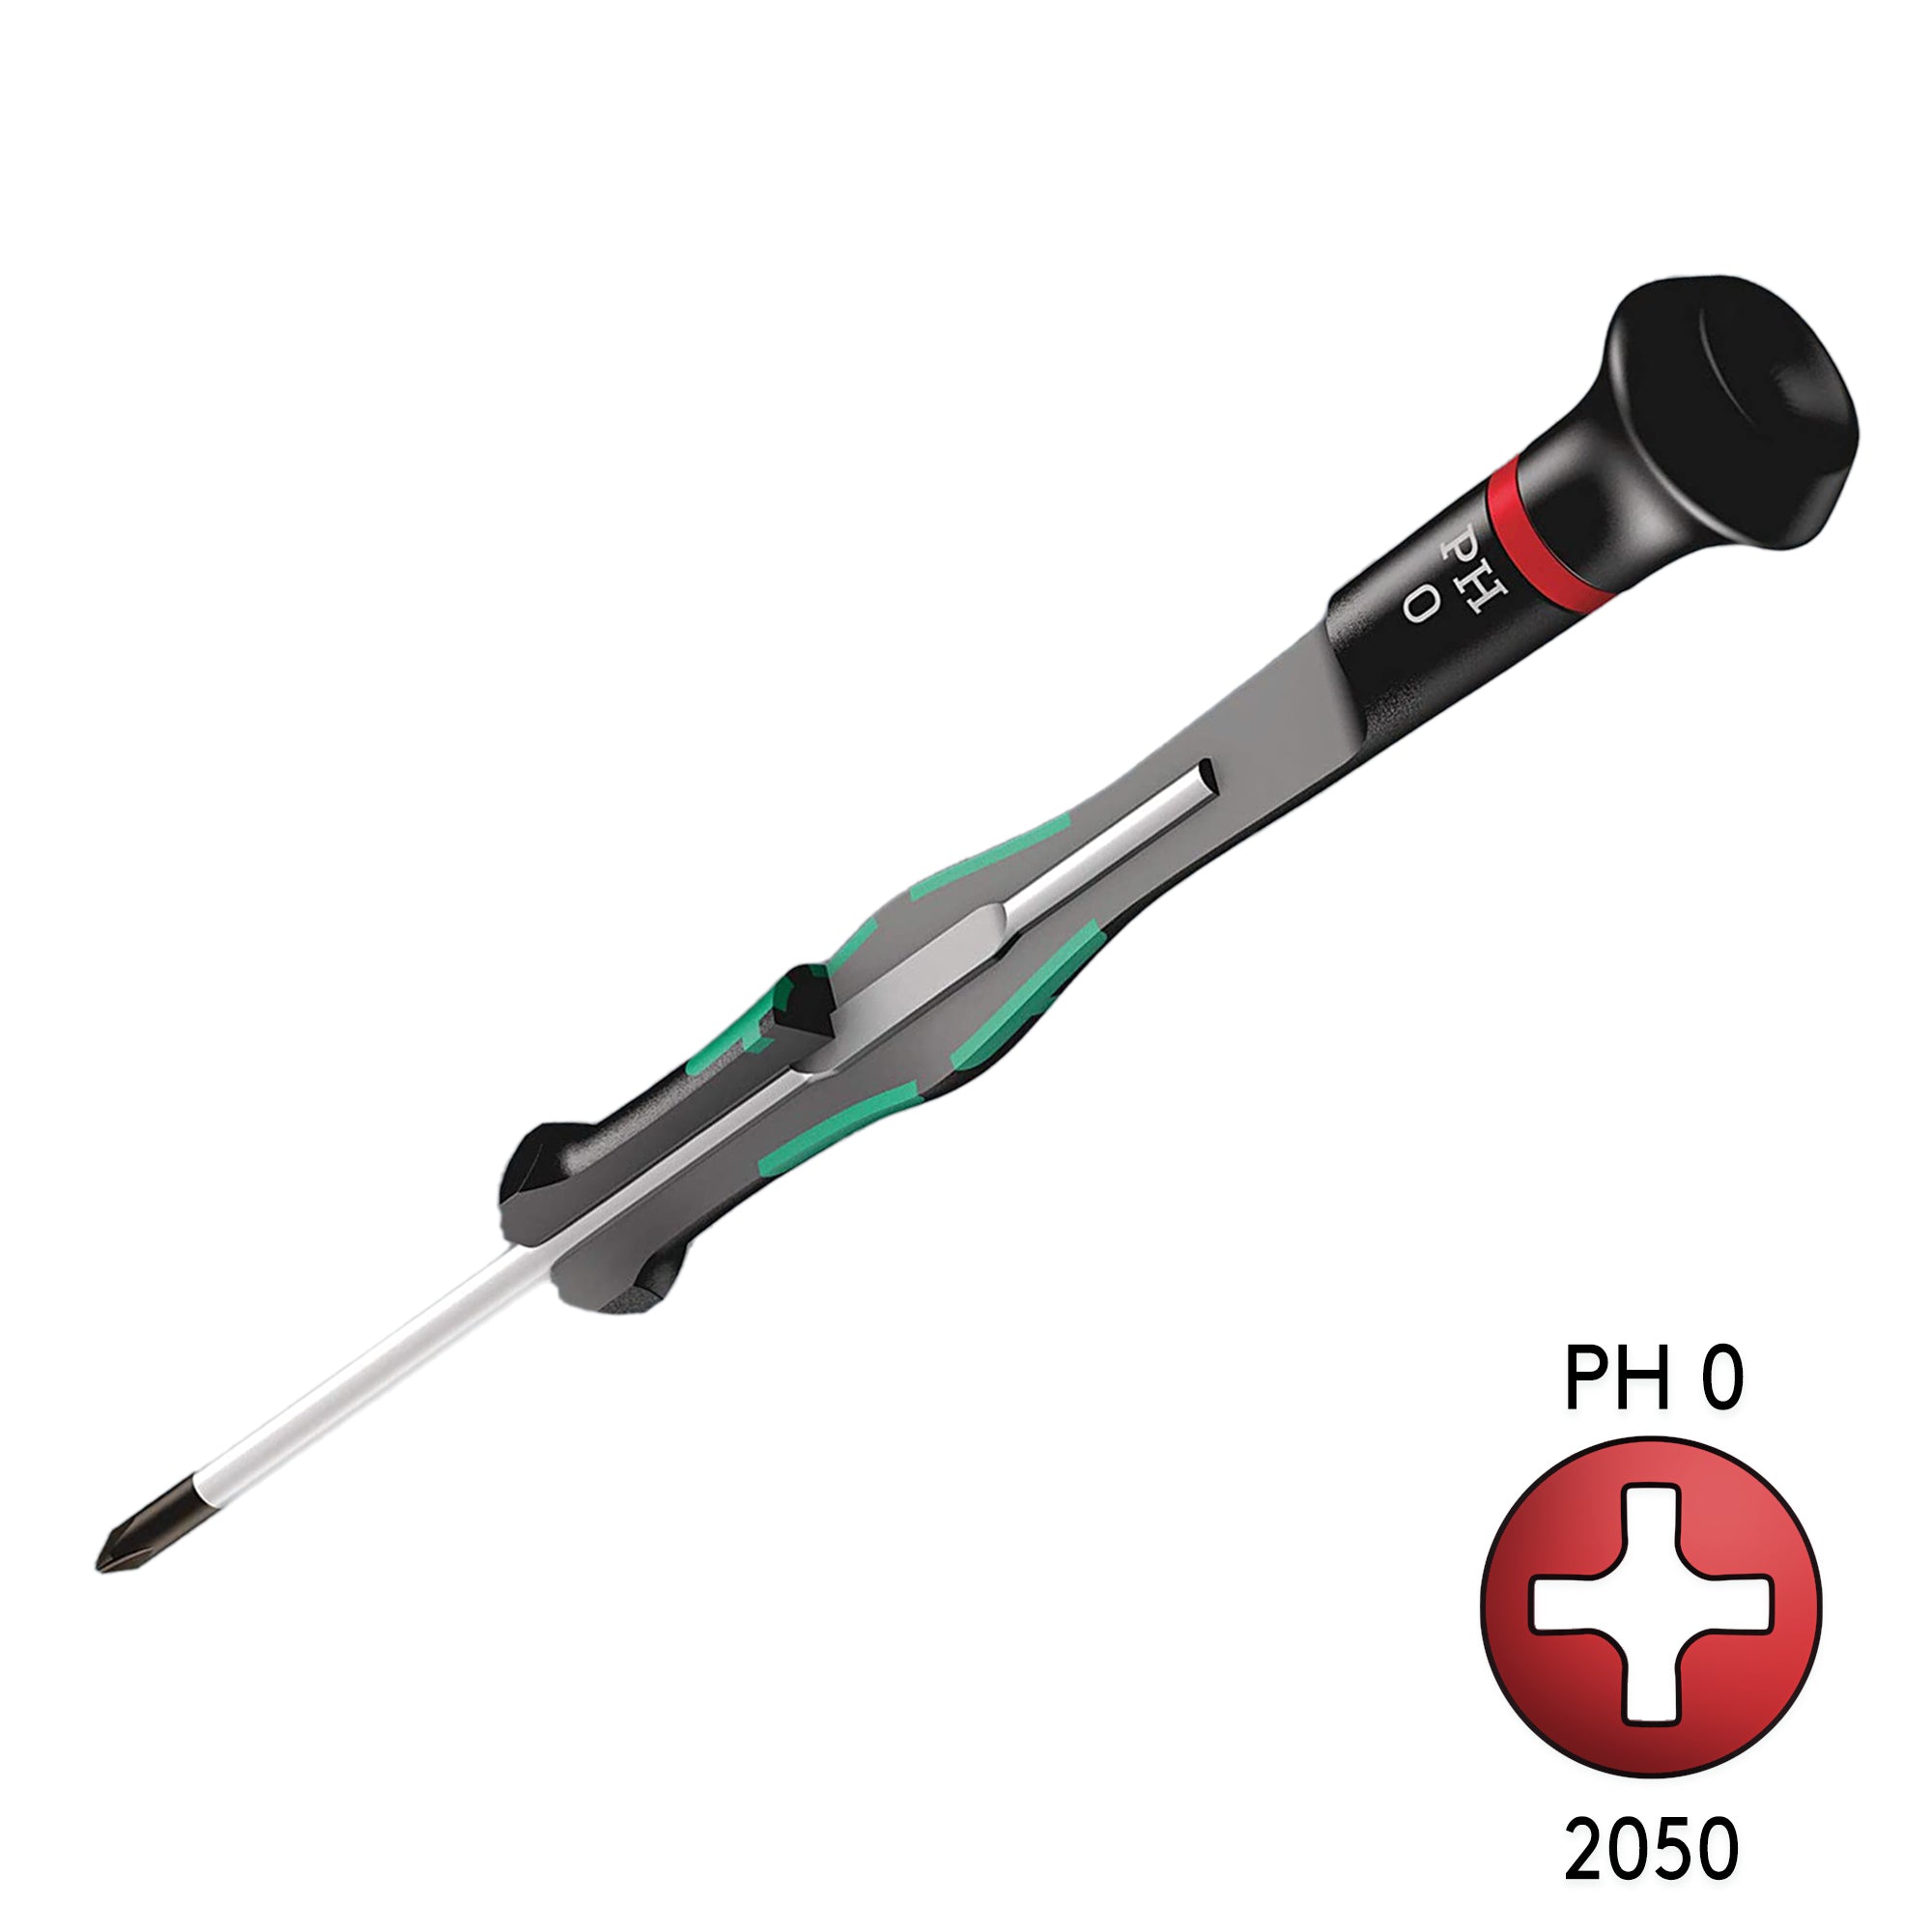 Wera 2050 PH 0 X 40mm Precision Phillips Screw Driver 05118026001